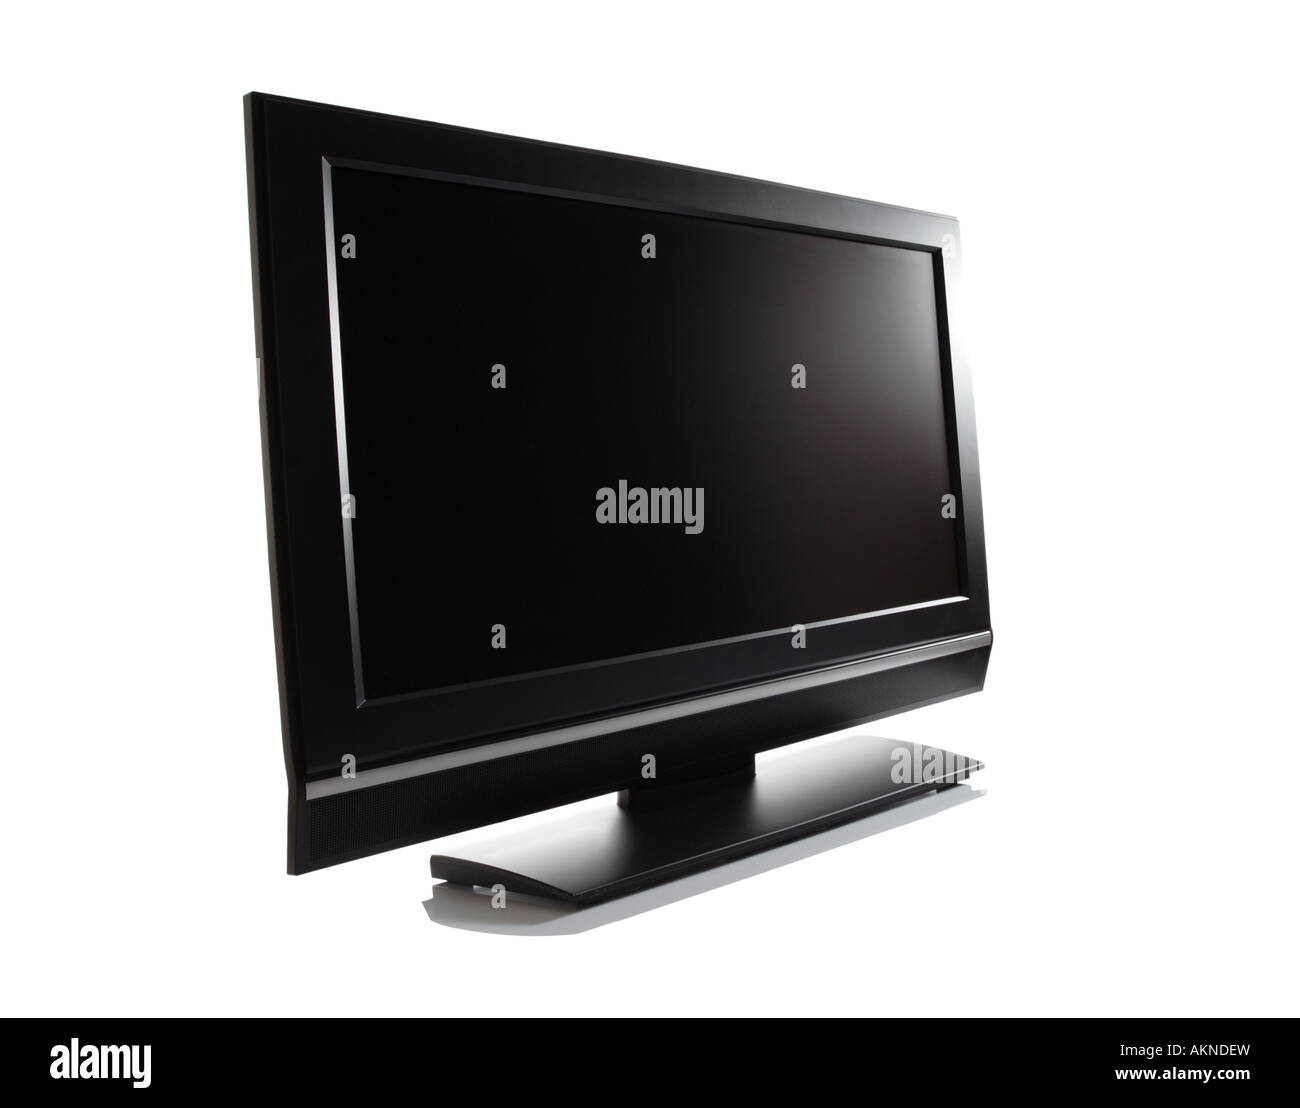 Télévision haute définition à écran LCD écran plat Banque D'Images